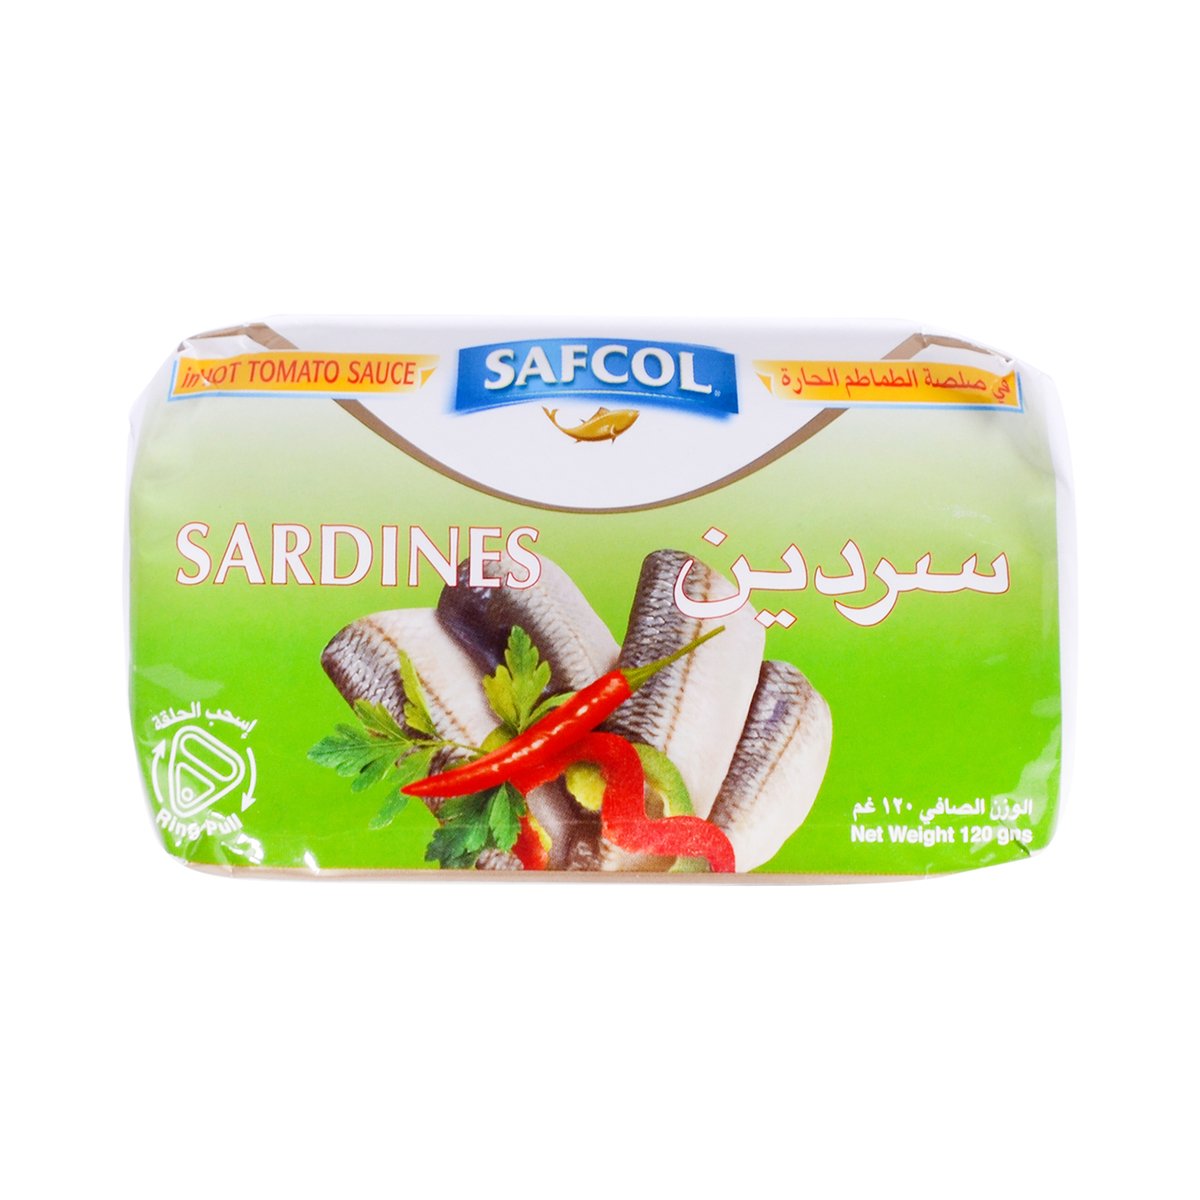 Safcol Sardine in Hot Tomato Sauce 120g